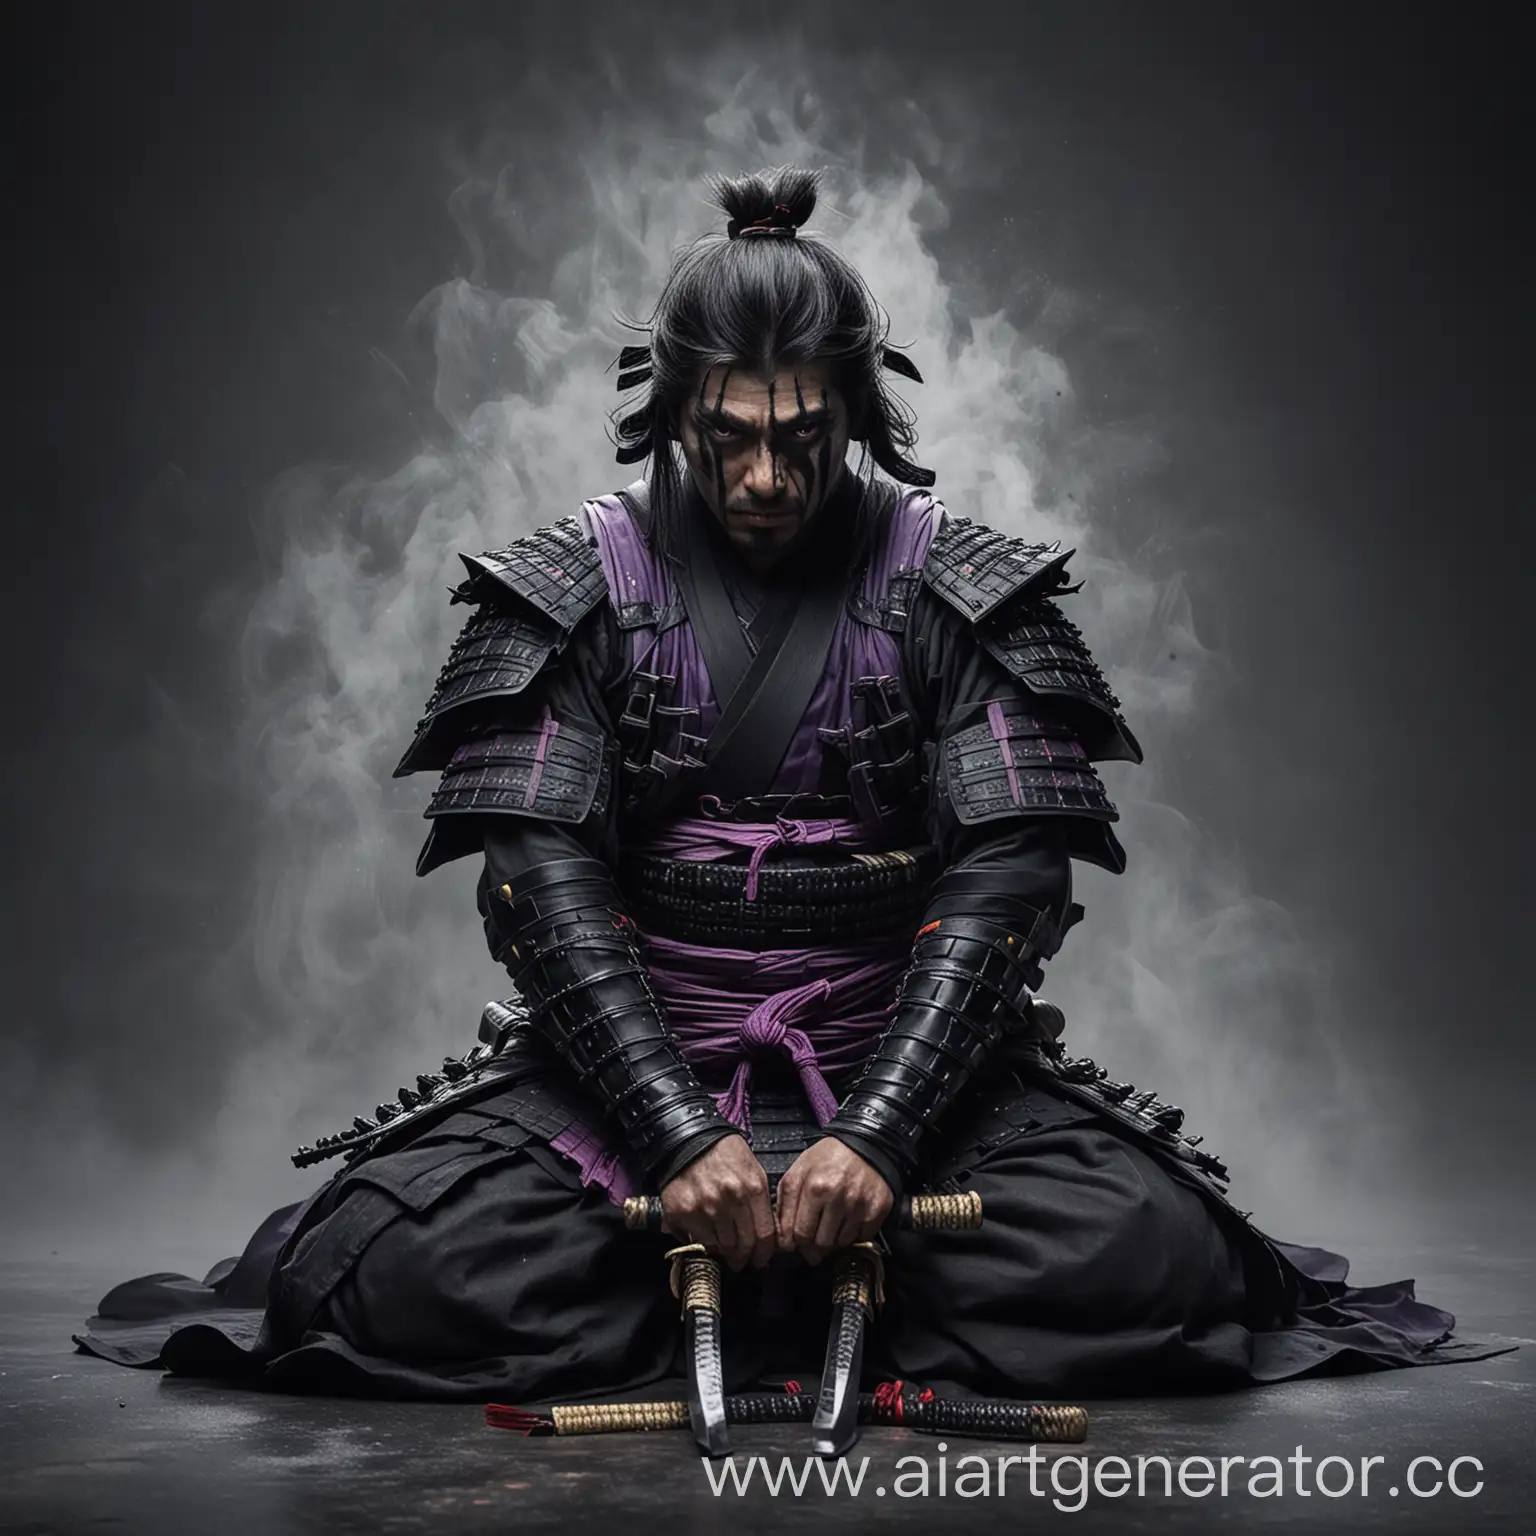 сдавшийся самурай в черных доспехах на сером фоне, густой туман, сидит на коленях, воткнул в себя катану, черный, фиолетовый, глаза
